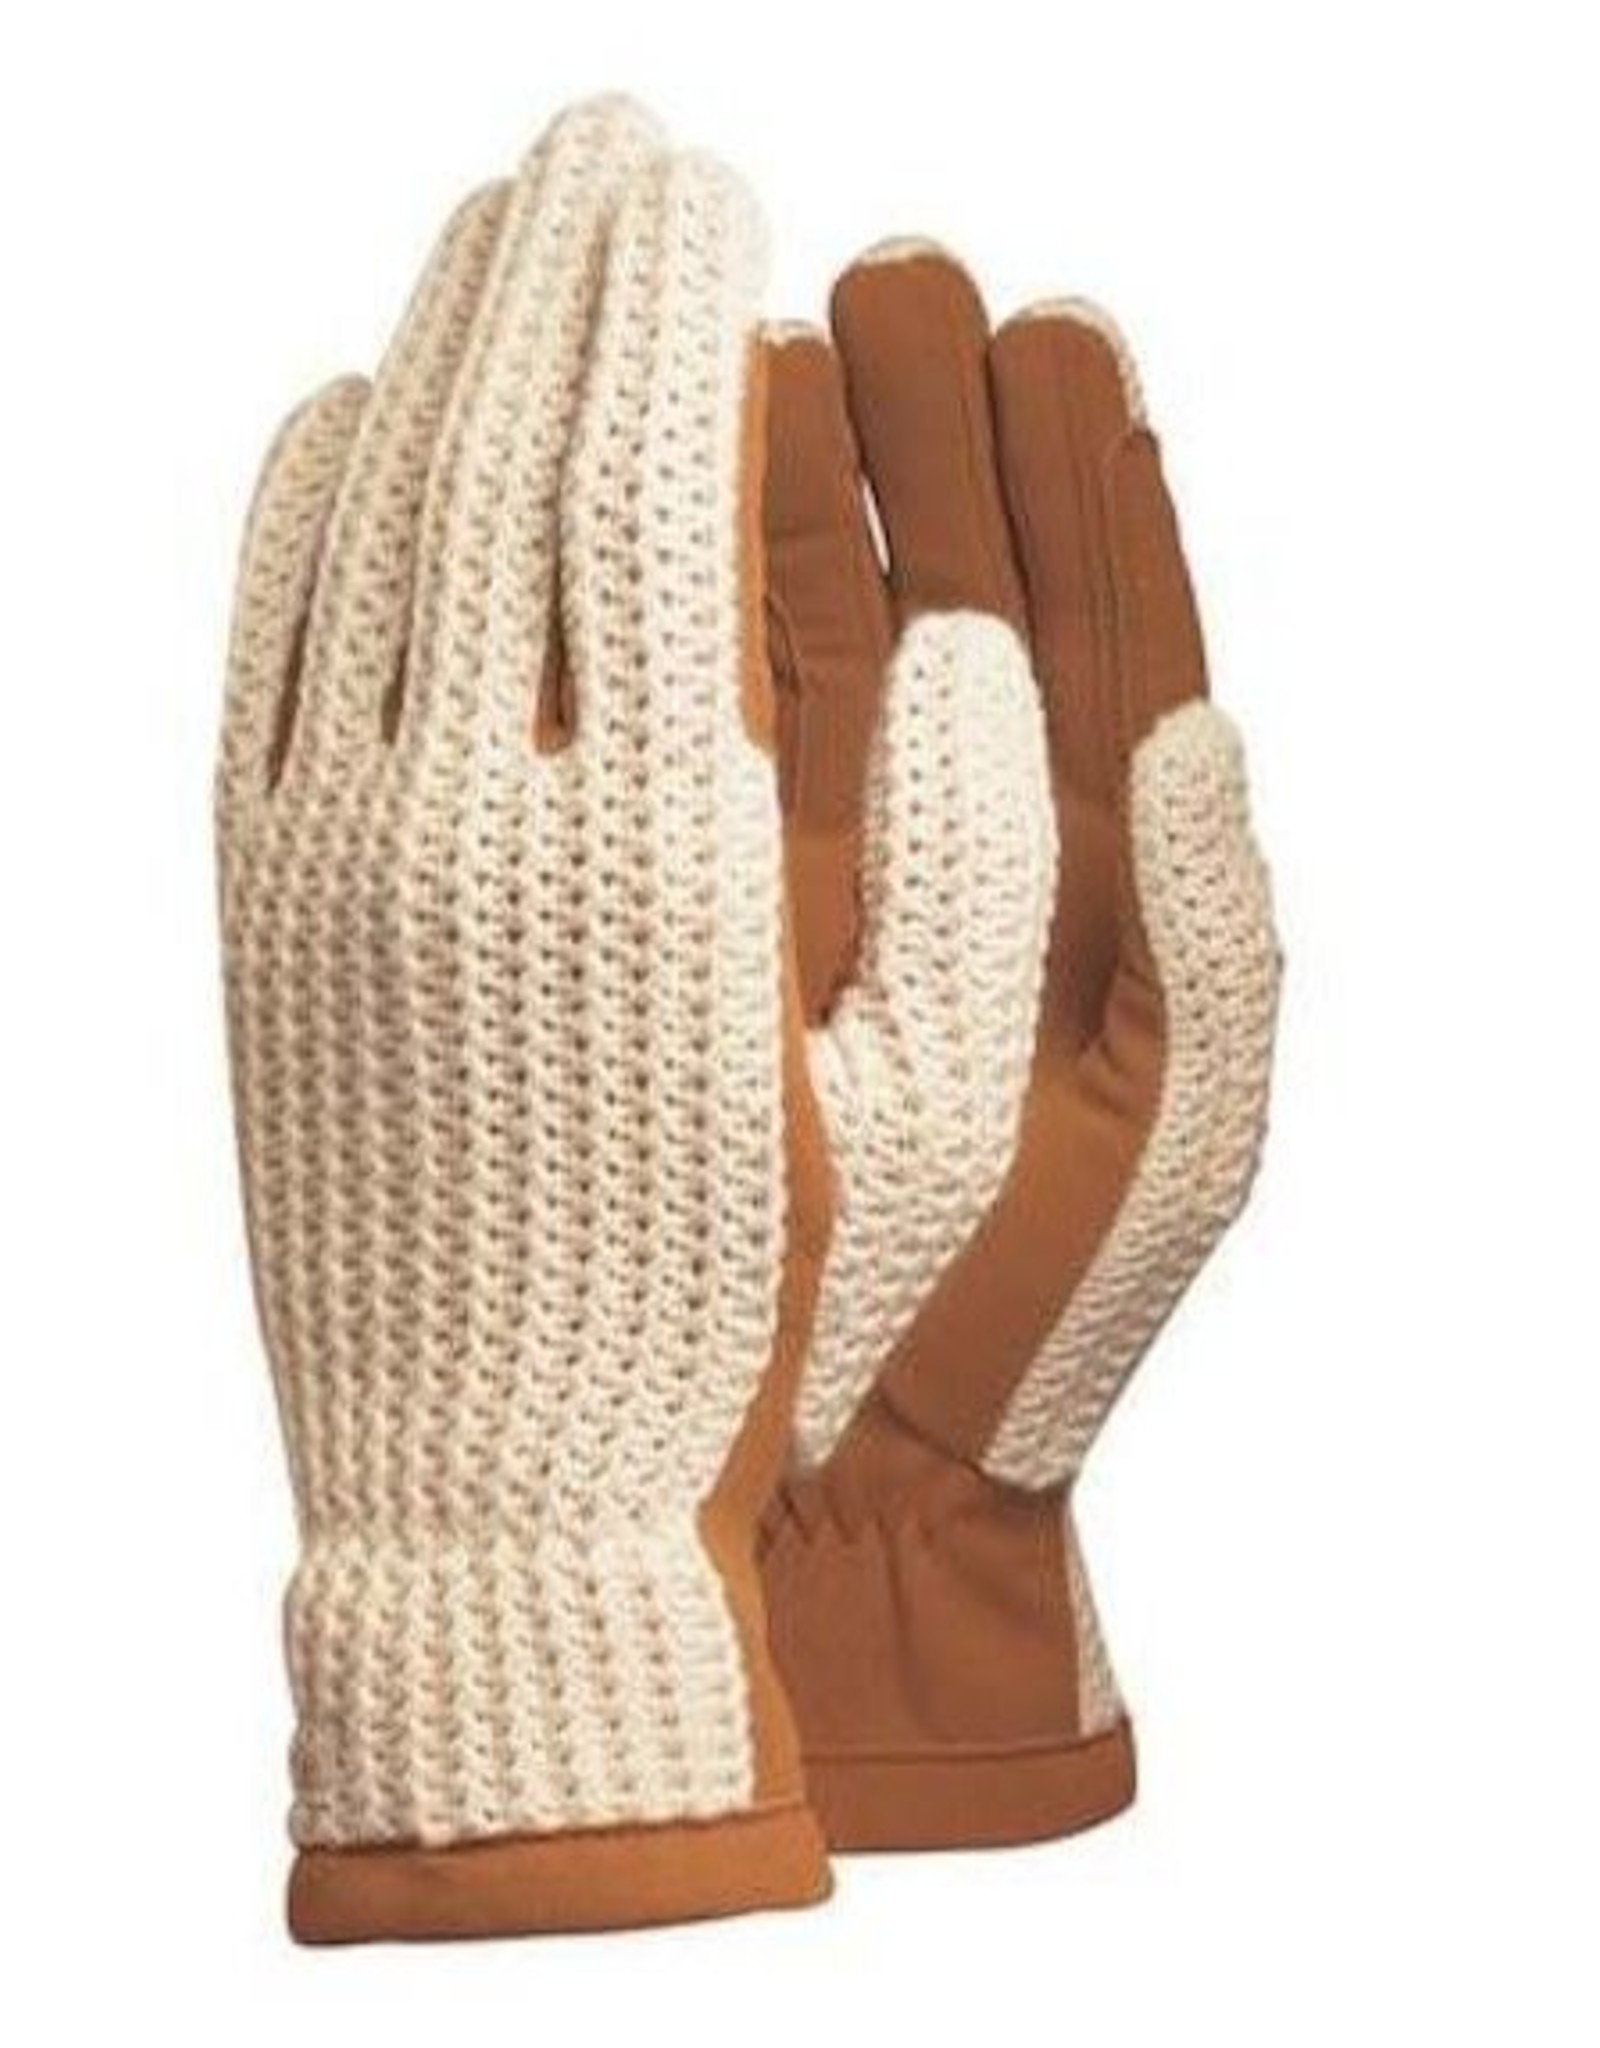 Ariat Ariat Glove Natural Grip - Size 6.5